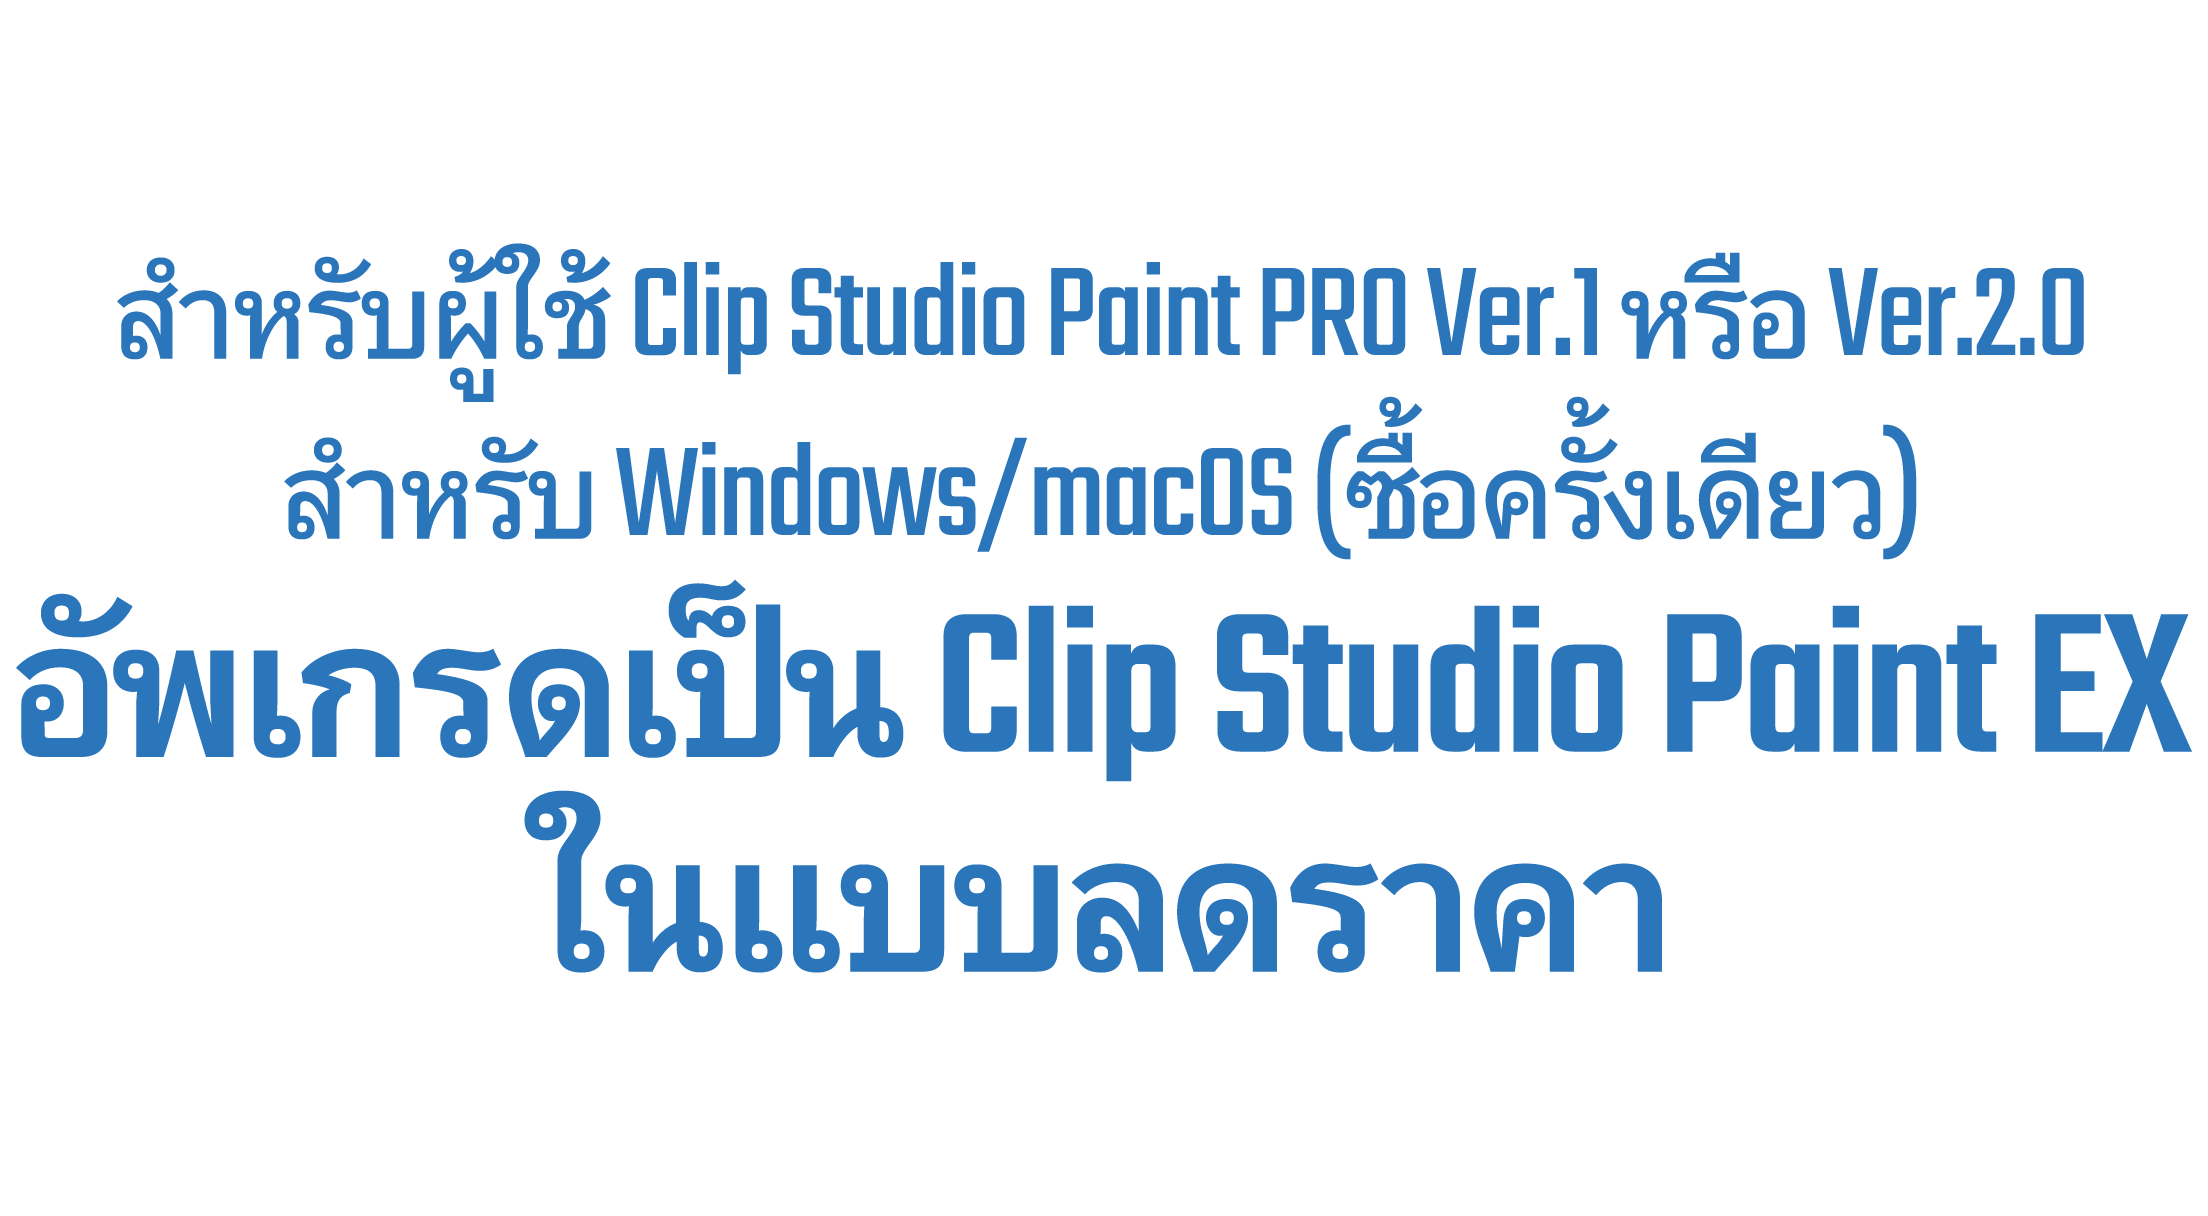 สำหรับผู้ใช้ Clip Studio Paint PRO Ver.1 หรือ Ver.2.0 สำหรับ Windows/macOS (ซื้อครั้งเดียว) สามารถอัพเกรดเป็น Clip Studio Paint EX ในราคาพร้อมส่วนลดได้